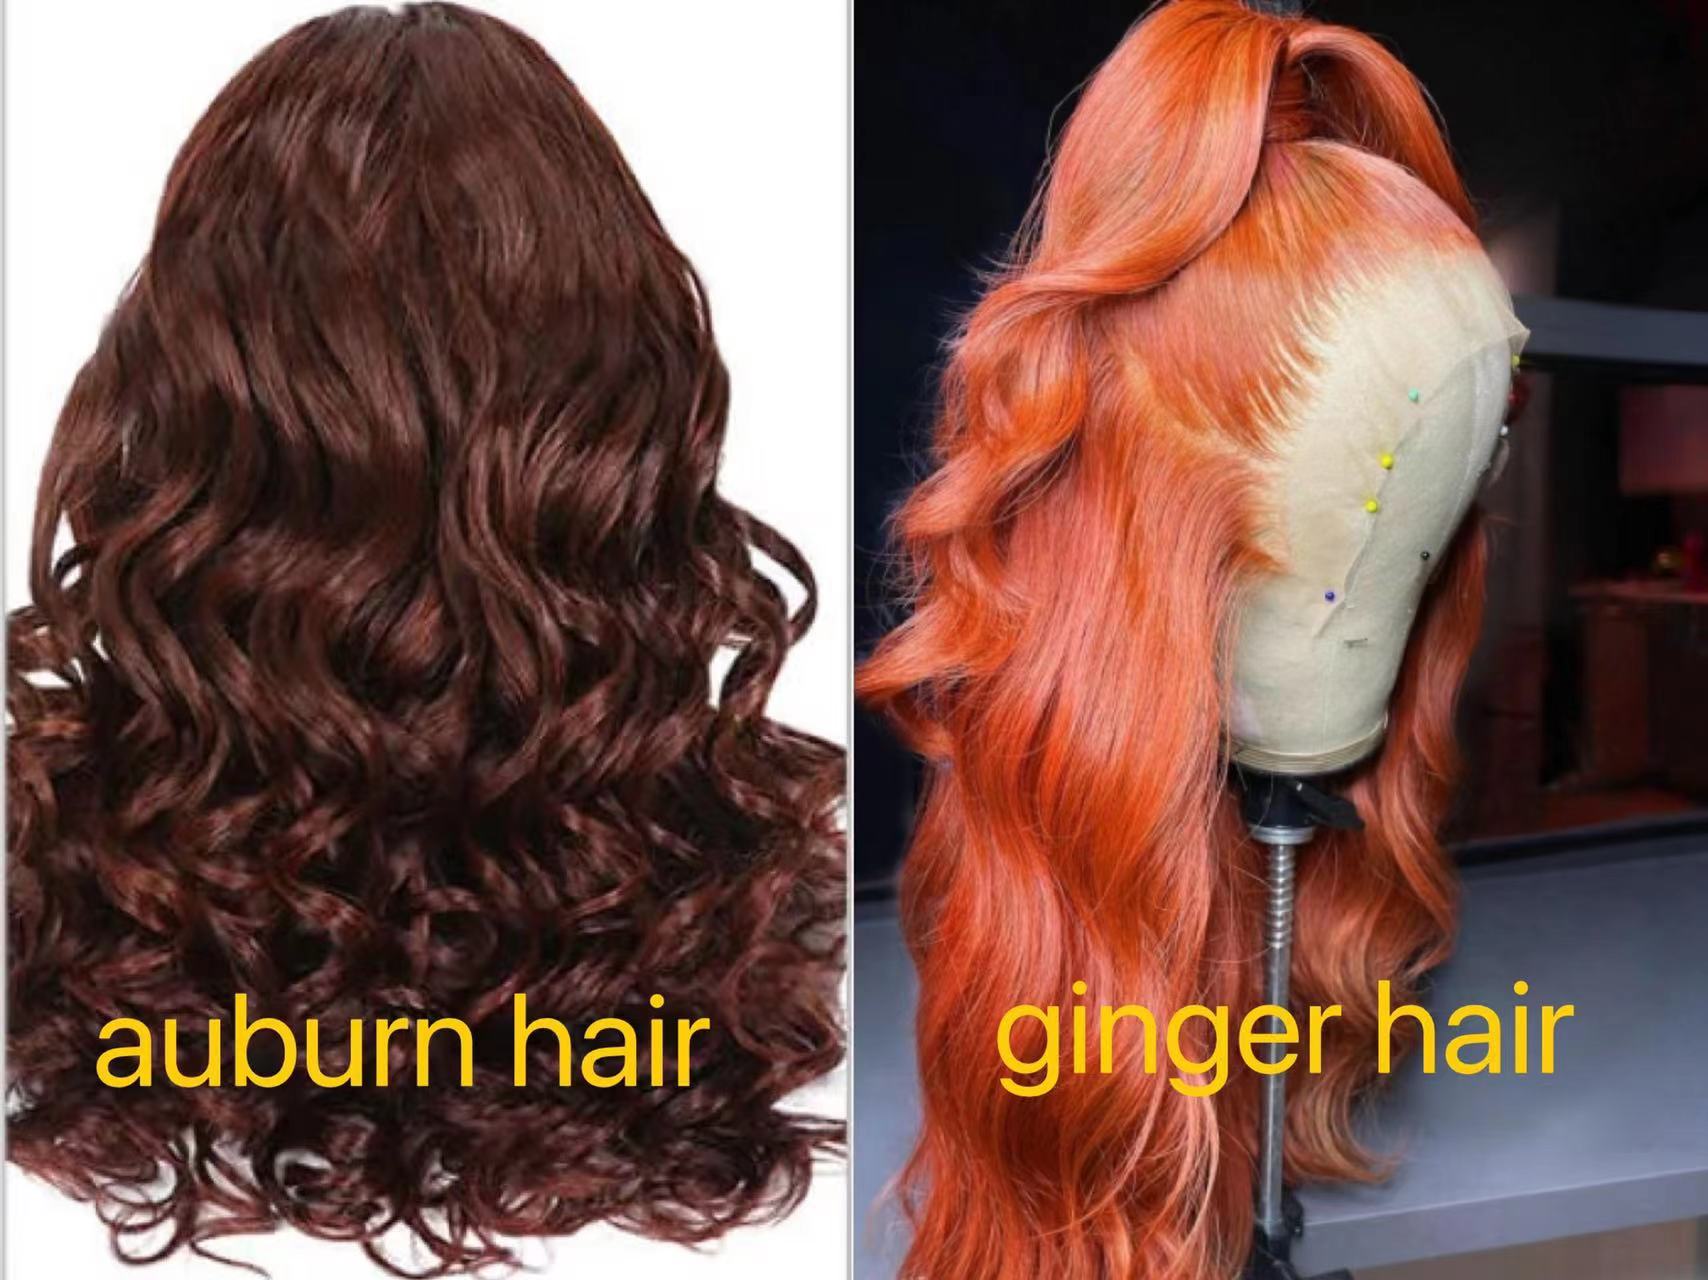 ginger vs. auburn